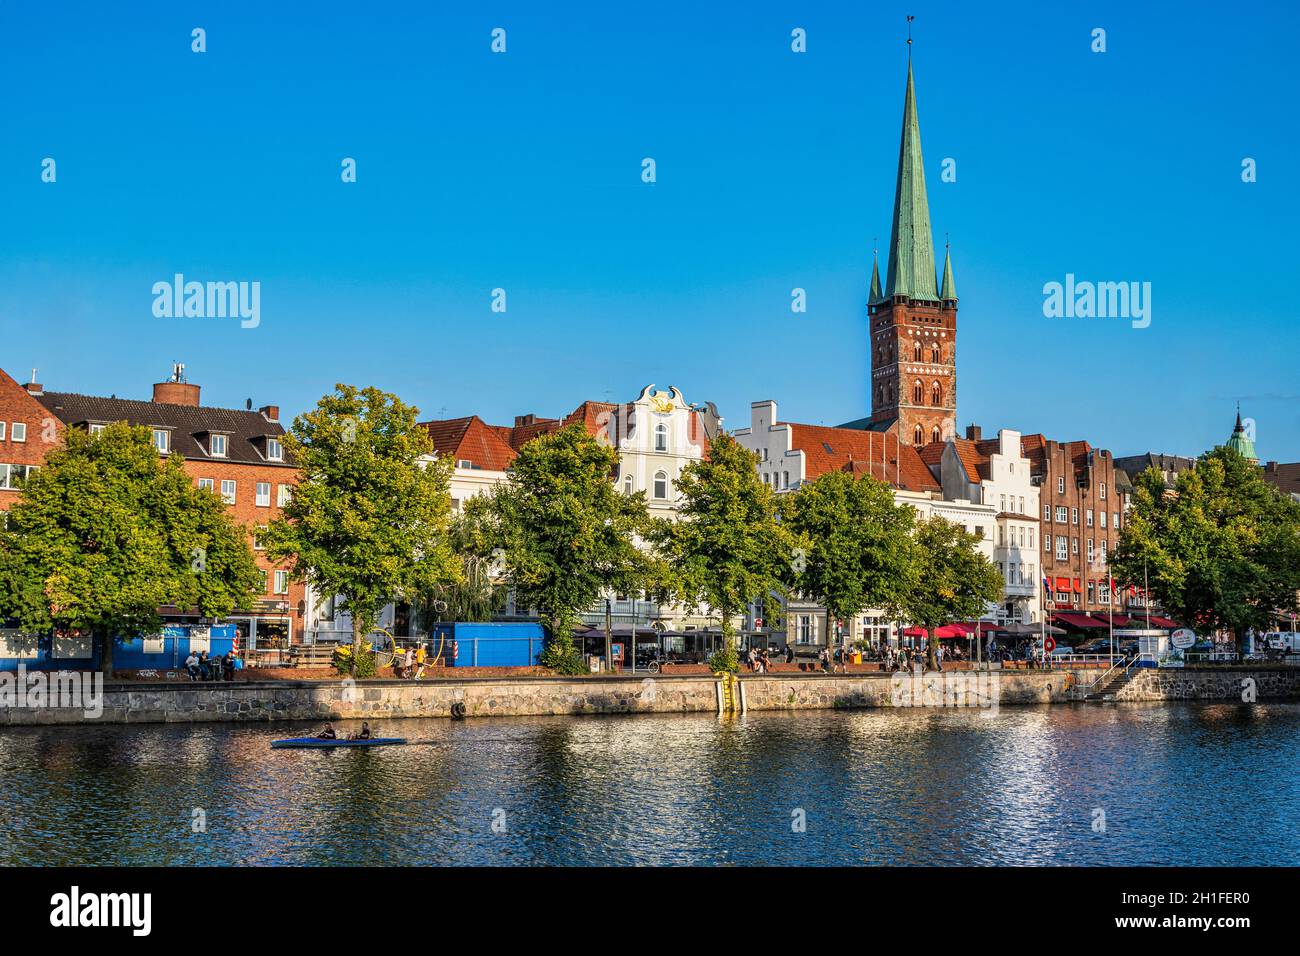 Typische Häuser der Stadt Lübeck mit Blick auf die Trace. Über den Dächern der Häuser erhebt sich der Glockenturm der Kirche San Pietro. Stockfoto